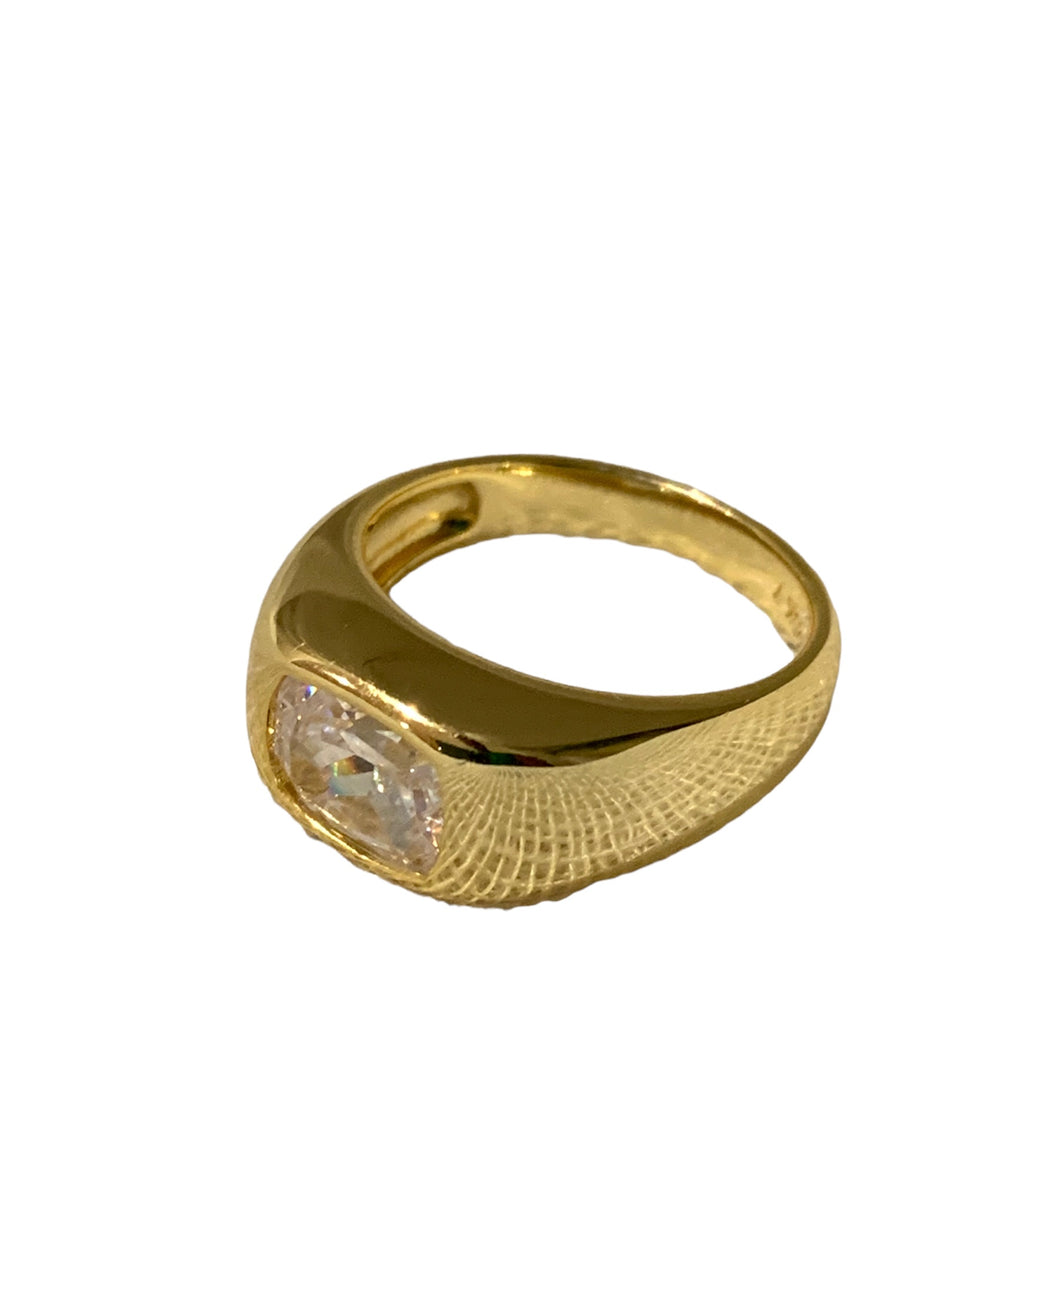 Gia Stone Ring